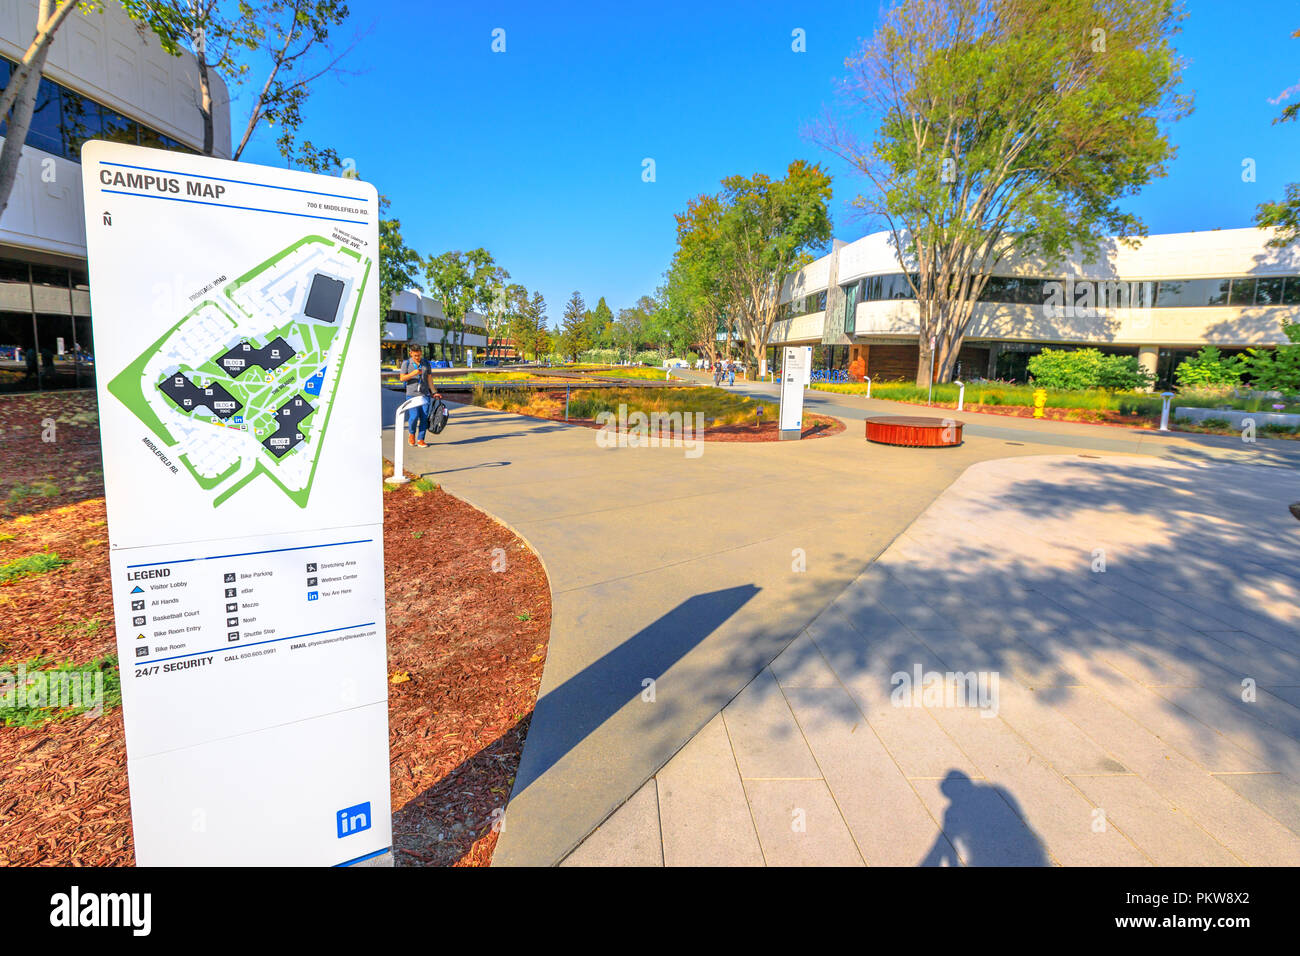 Mountain View, Californie, États-Unis - 13 août 2018 : nouveau Linkedin Corp Carte du campus dans la Silicon Valley. Linkedin est une entreprise axée sur l'emploi et de réseau social professionnel service. Banque D'Images